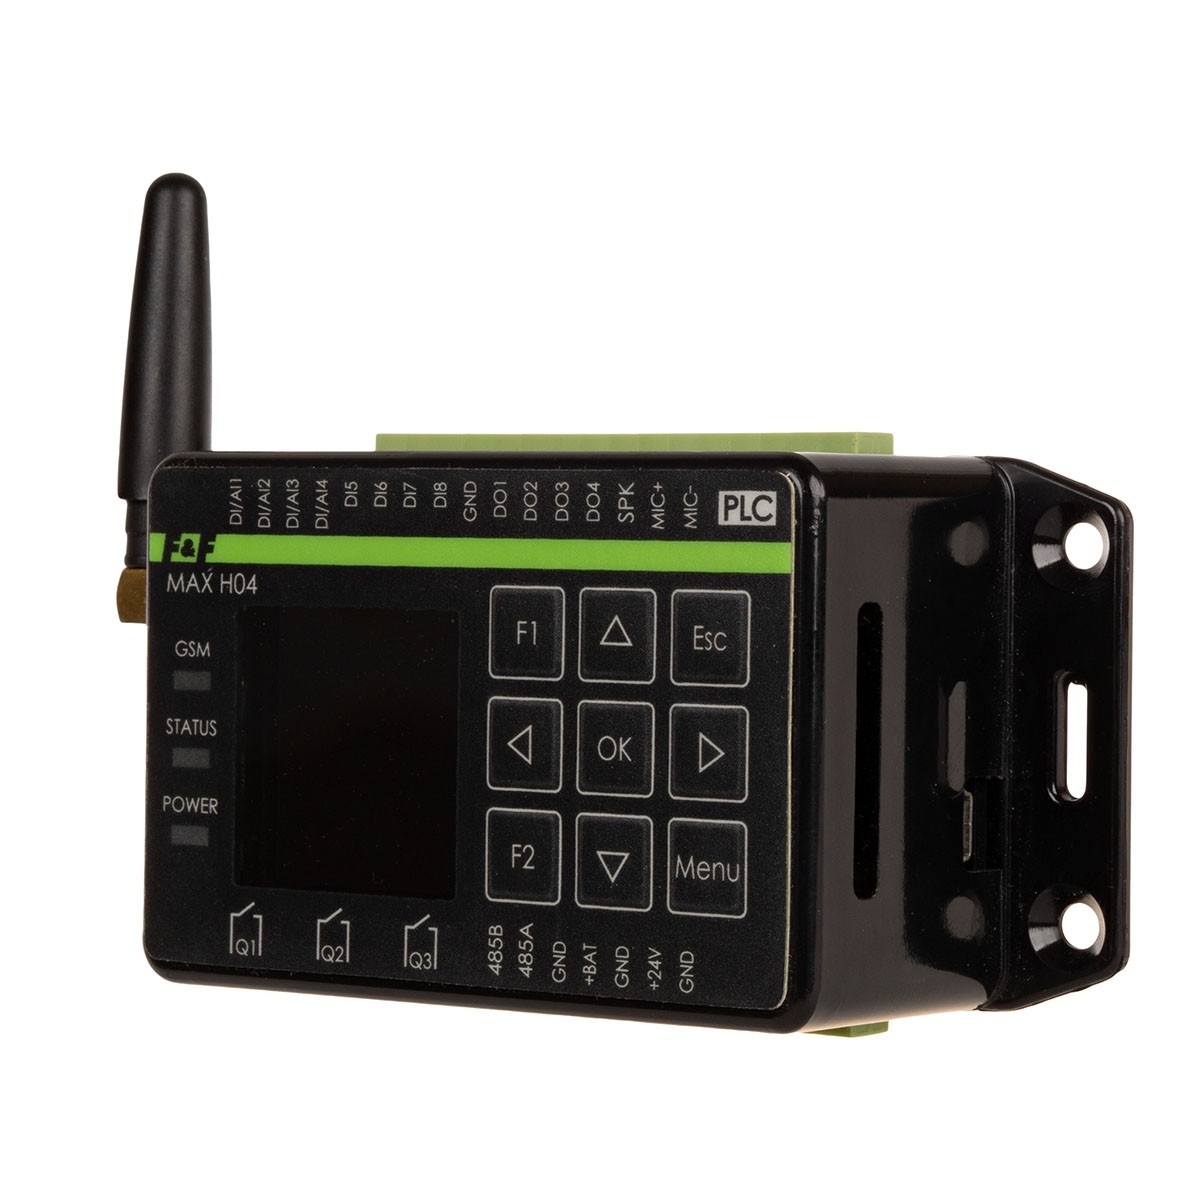 MAX-H04 sterownik programowalny z komunikatorem GSM, klawiatura + lcd, antena zewnętrzna 2,5m w komplecie F&F